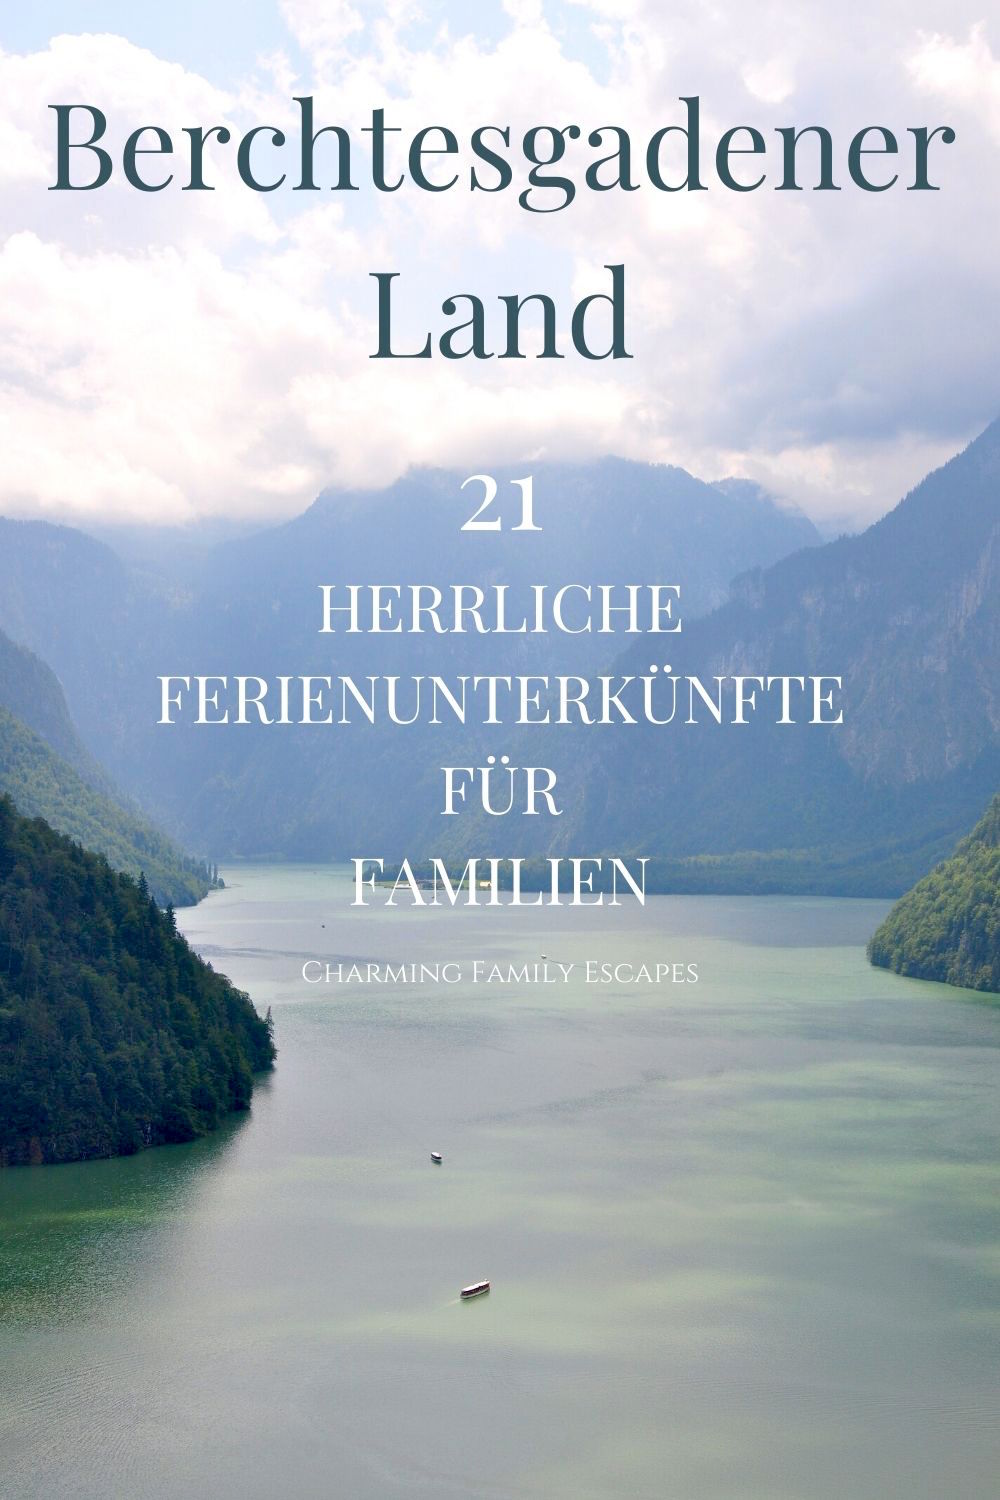 21 herrliche Ferienunterkünfte für Familien im Berchtesgadener Land, Deutschland